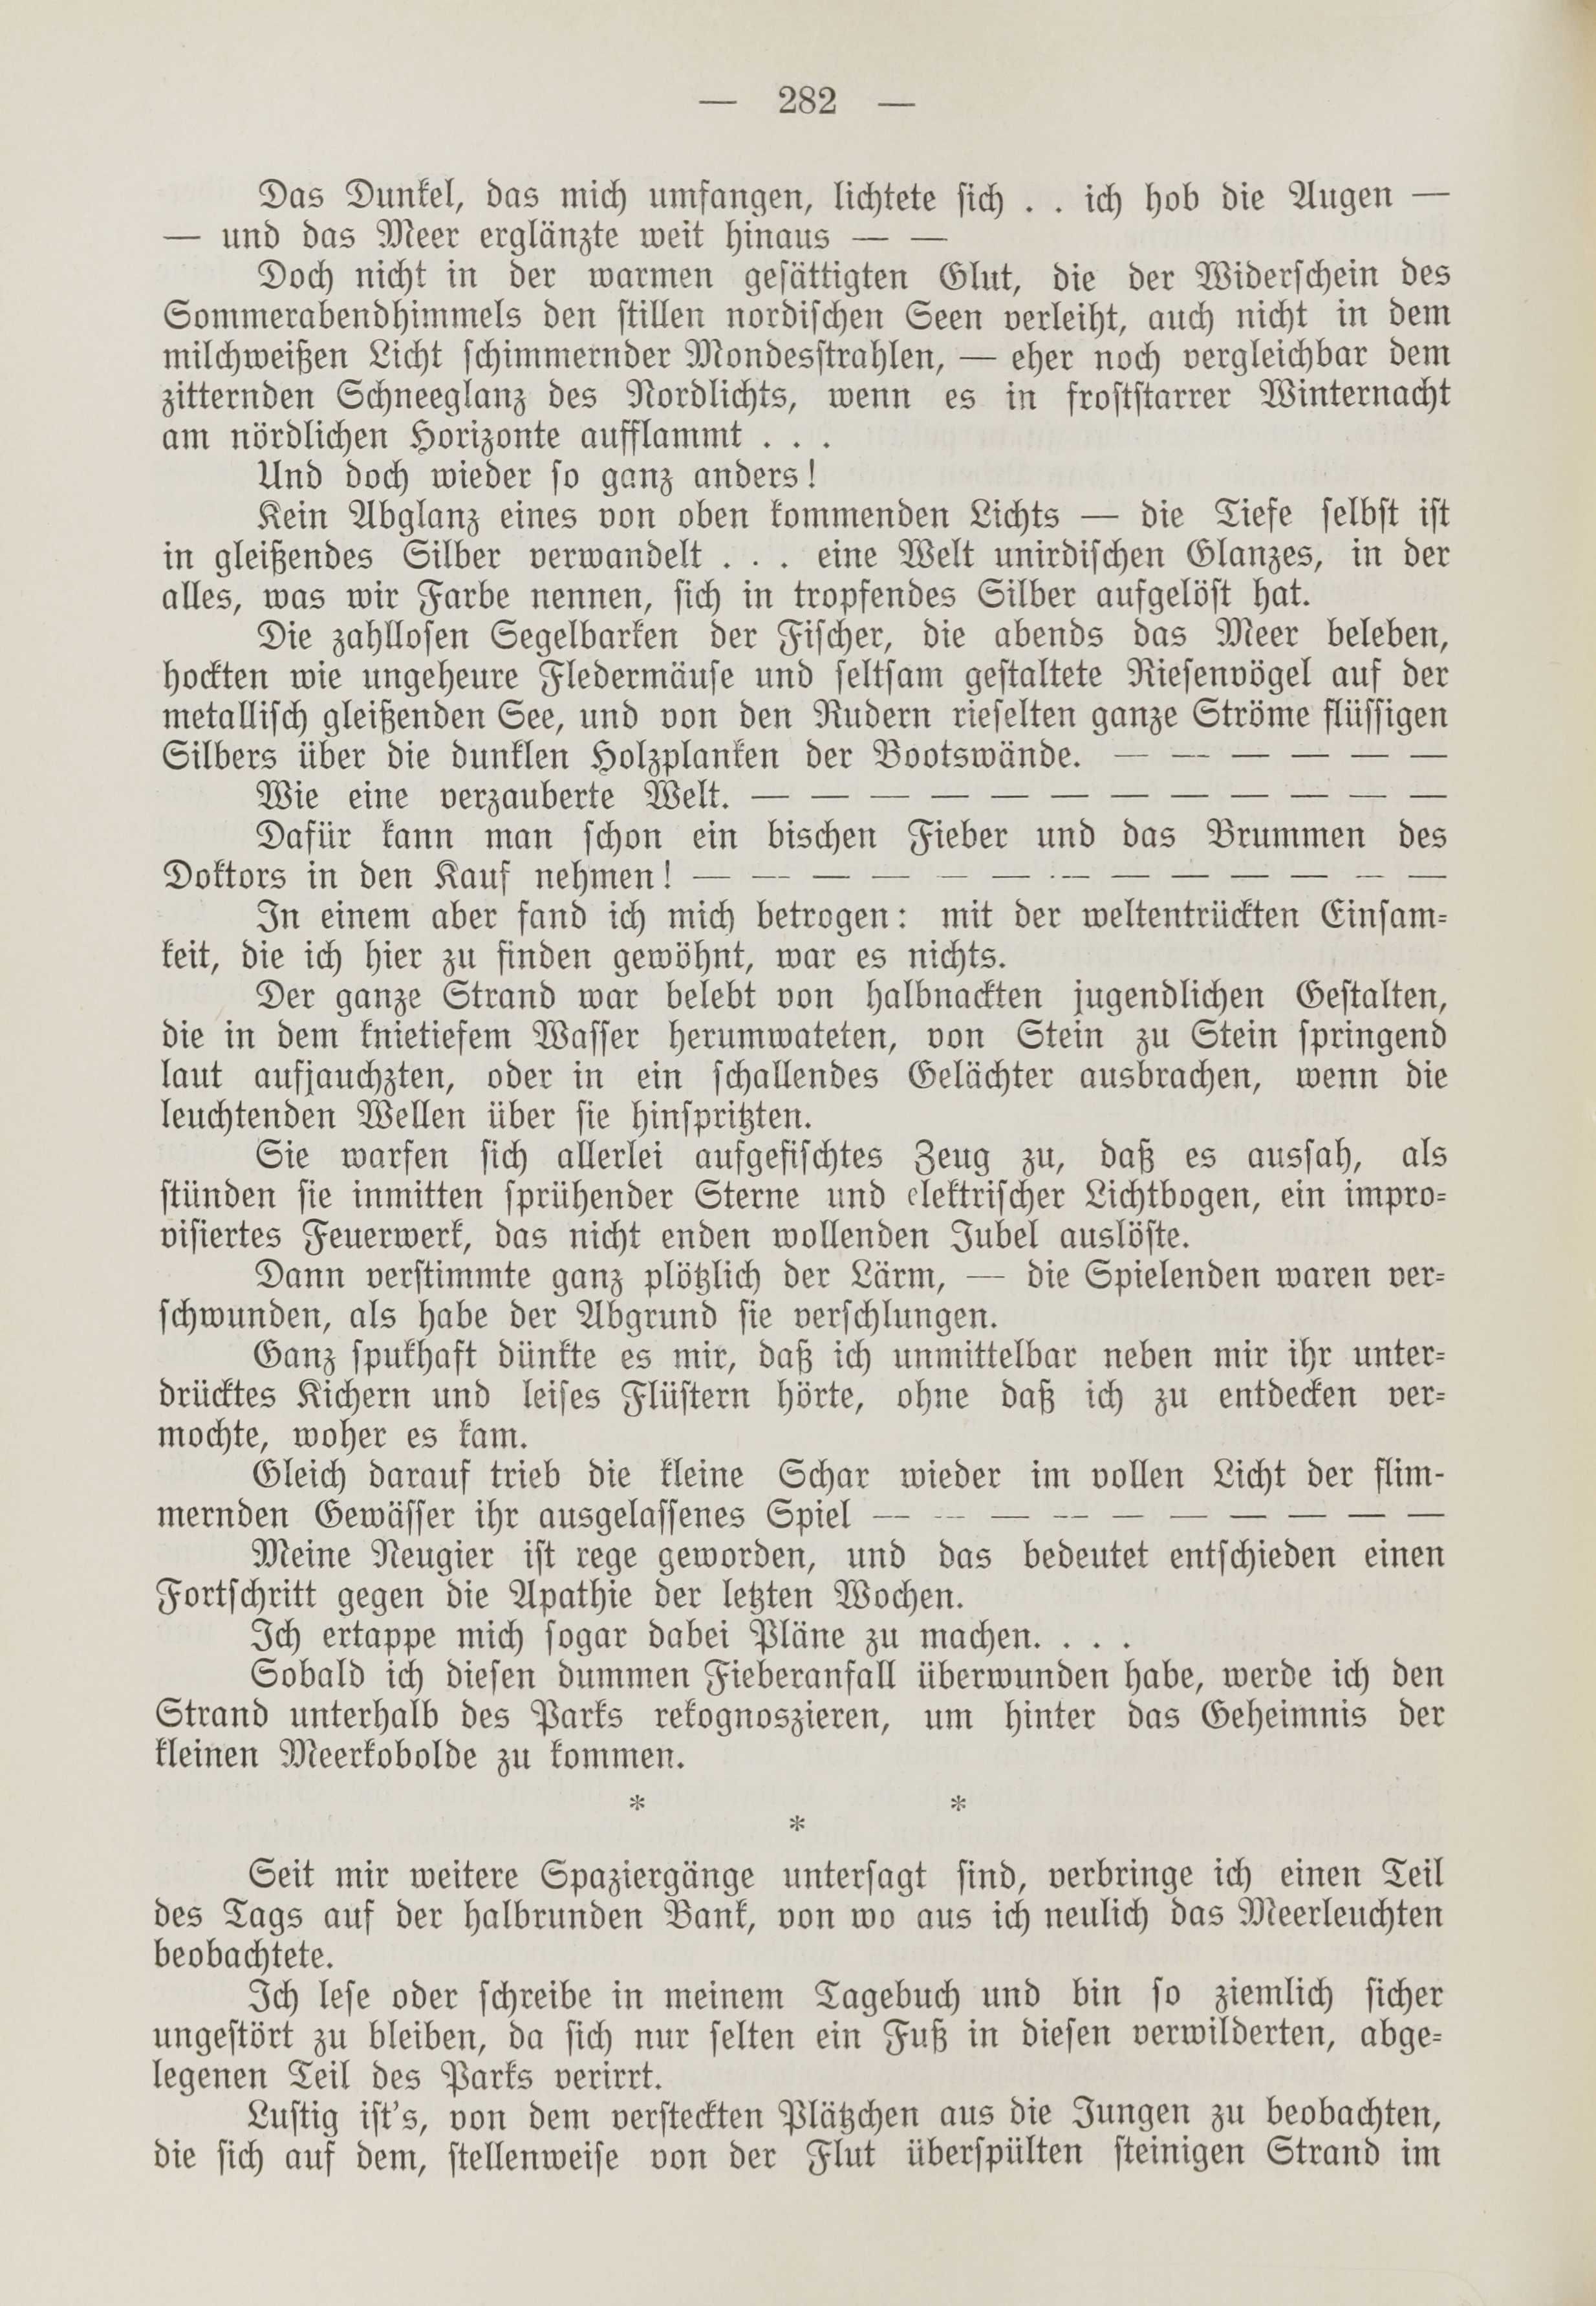 Deutsche Monatsschrift für Russland [1] (1912) | 290. (282) Main body of text